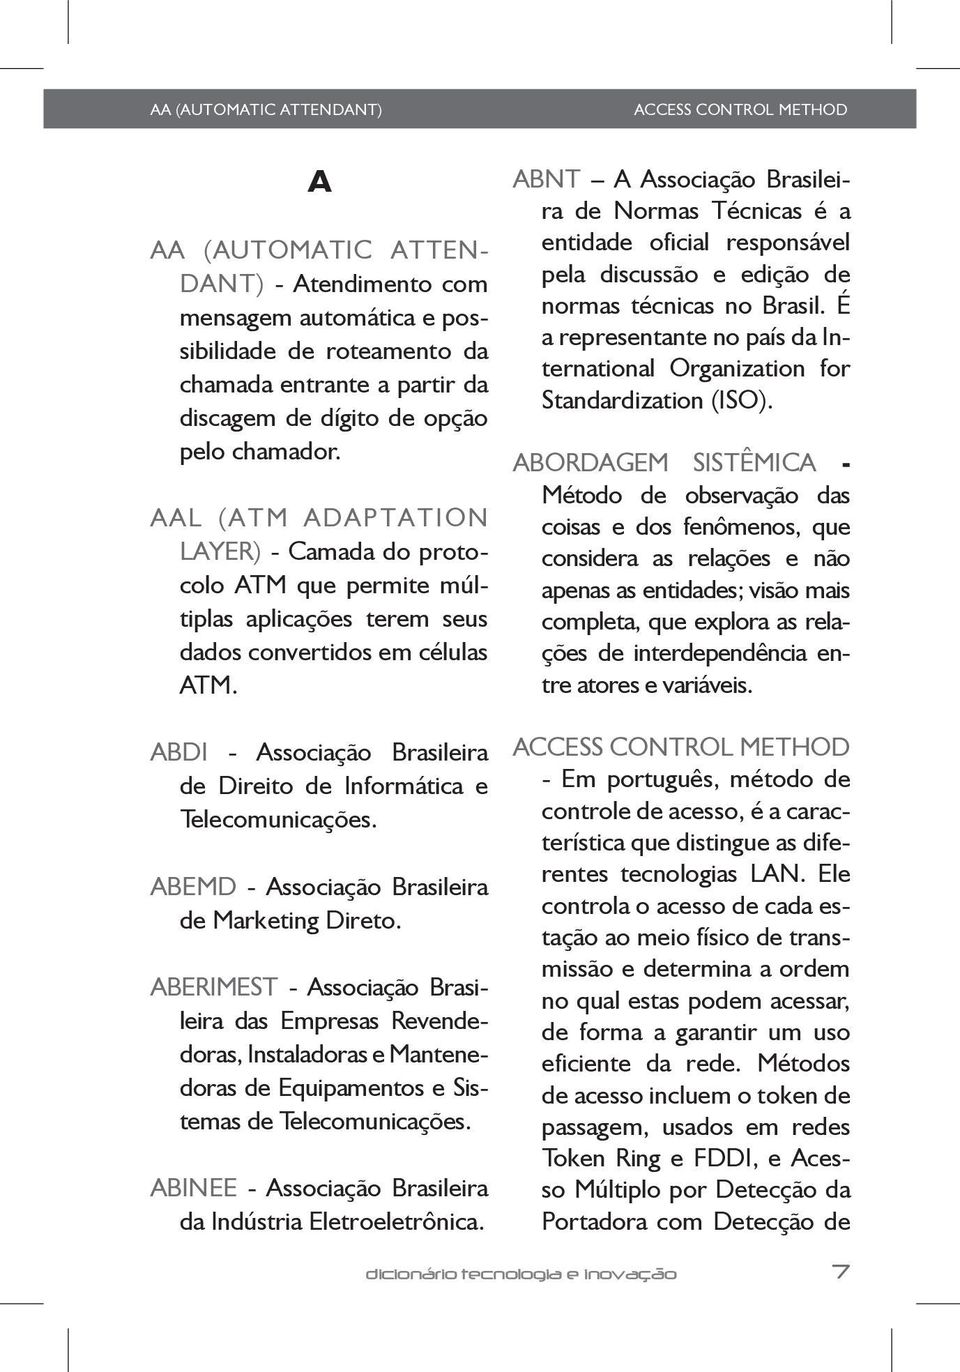 ABDI - Associação Brasileira de Direito de Informática e Telecomunicações. ABEMD - Associação Brasileira de Marketing Direto.